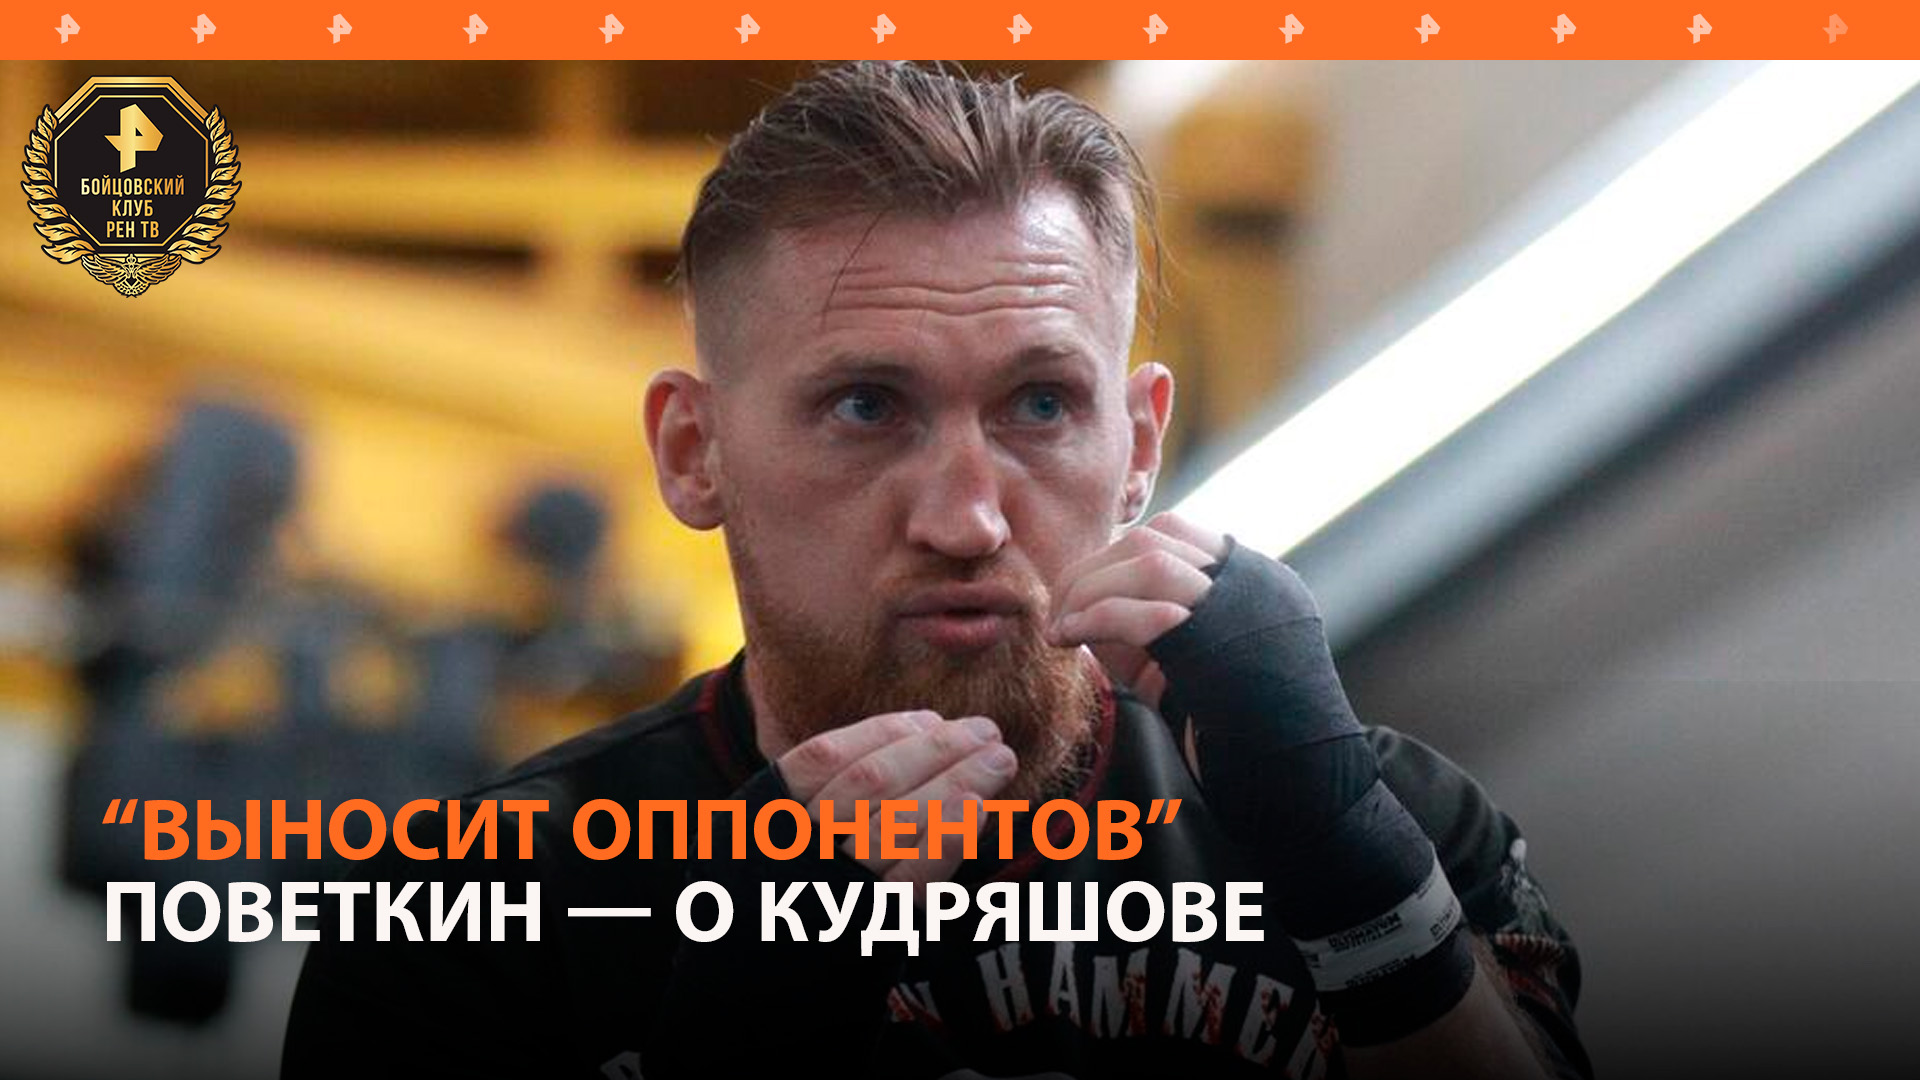 Поветкин назвал Кудряшова хорошим боксером с сильным ударом / Бойцовский клуб РЕН ТВ